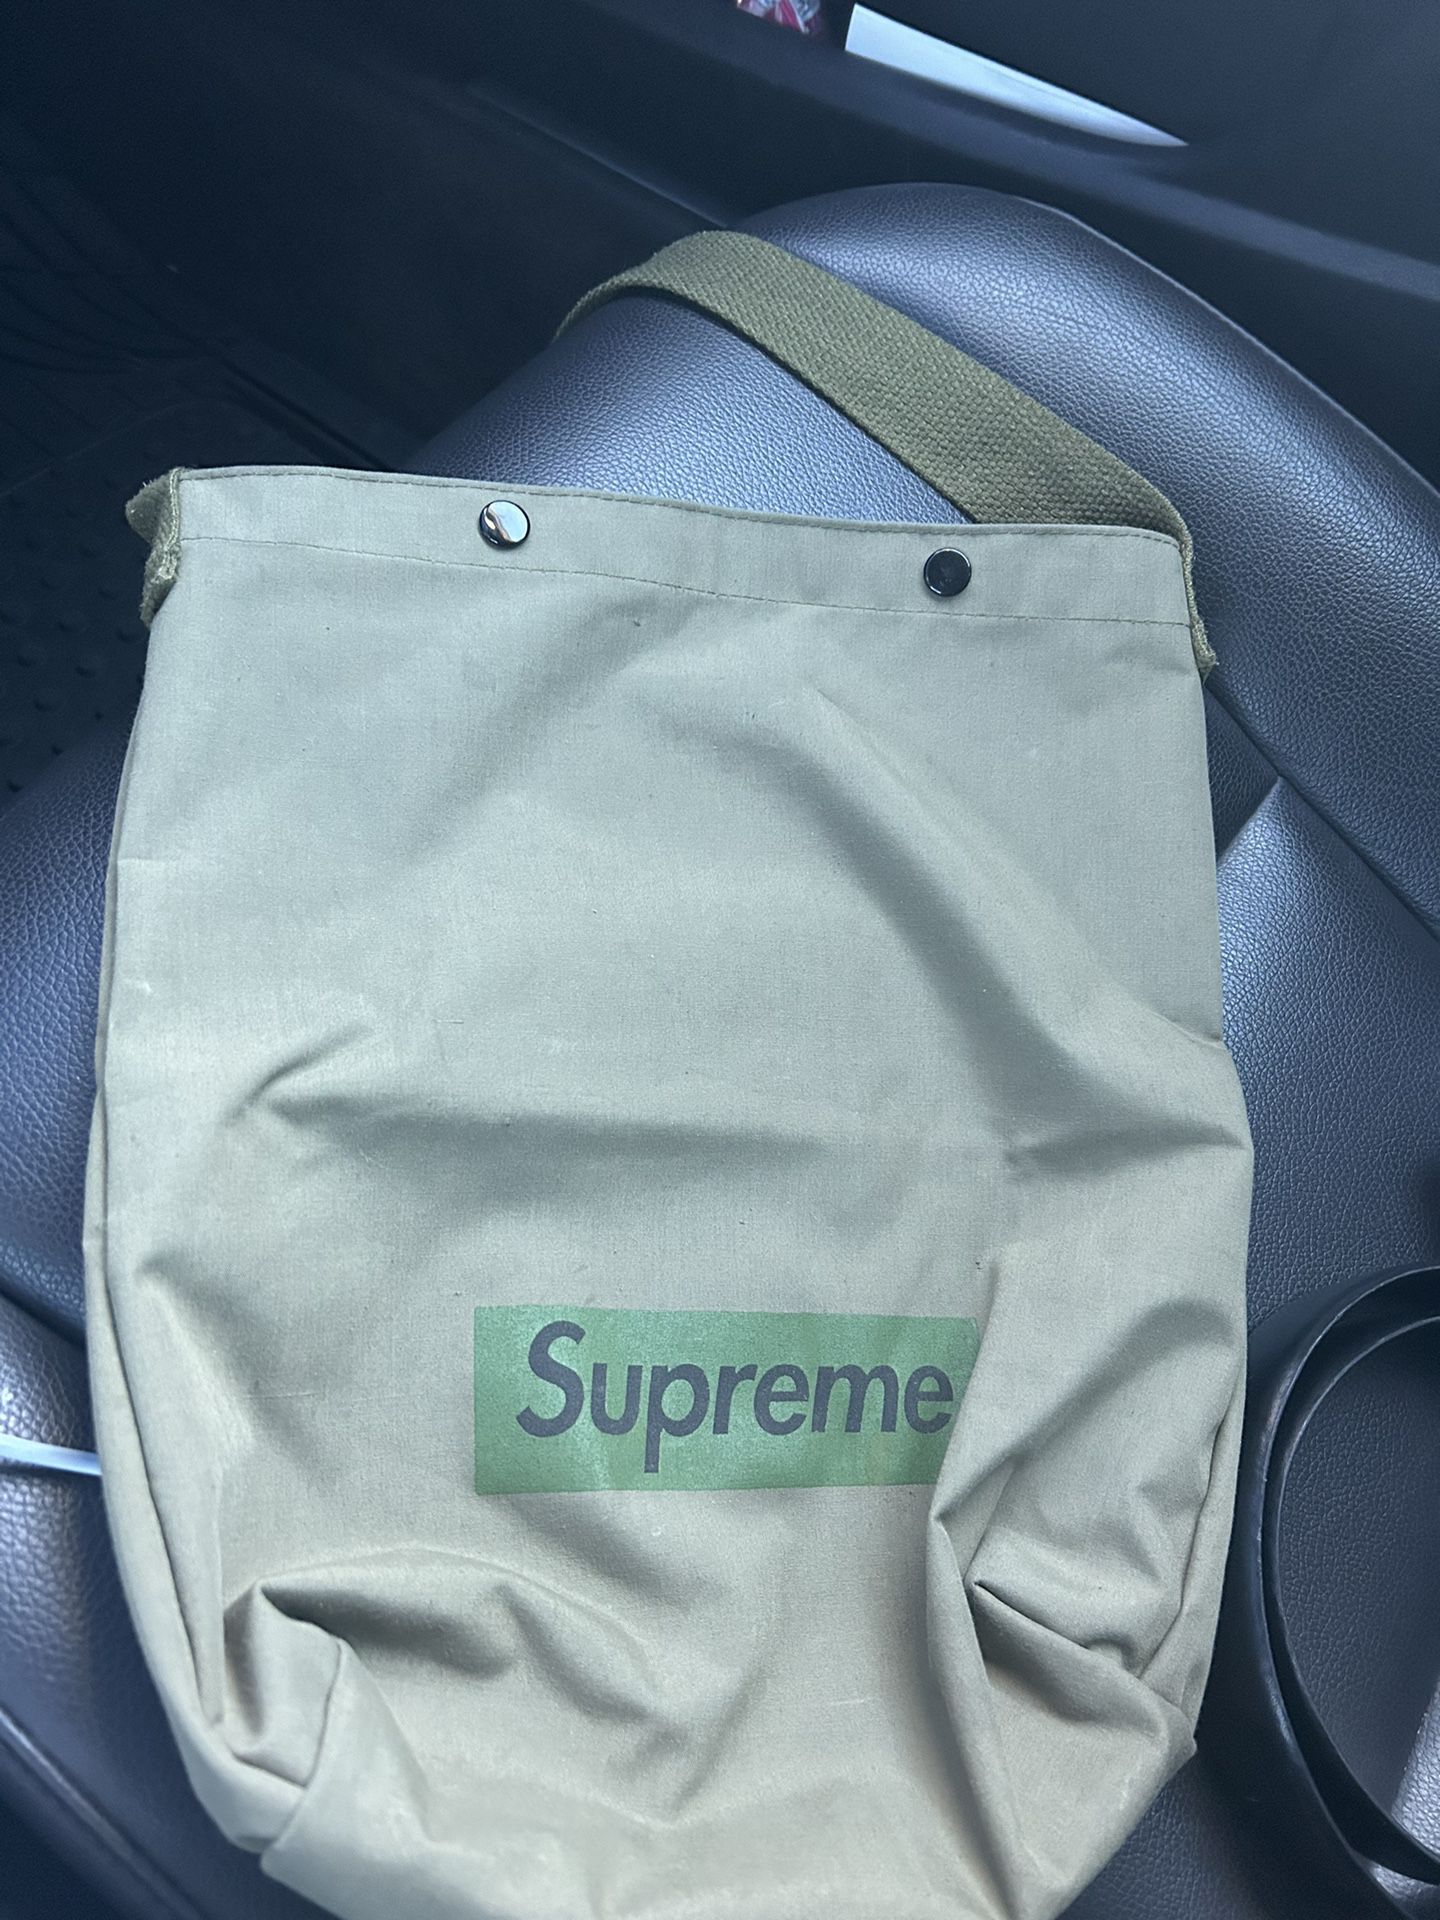 Supreme bag 